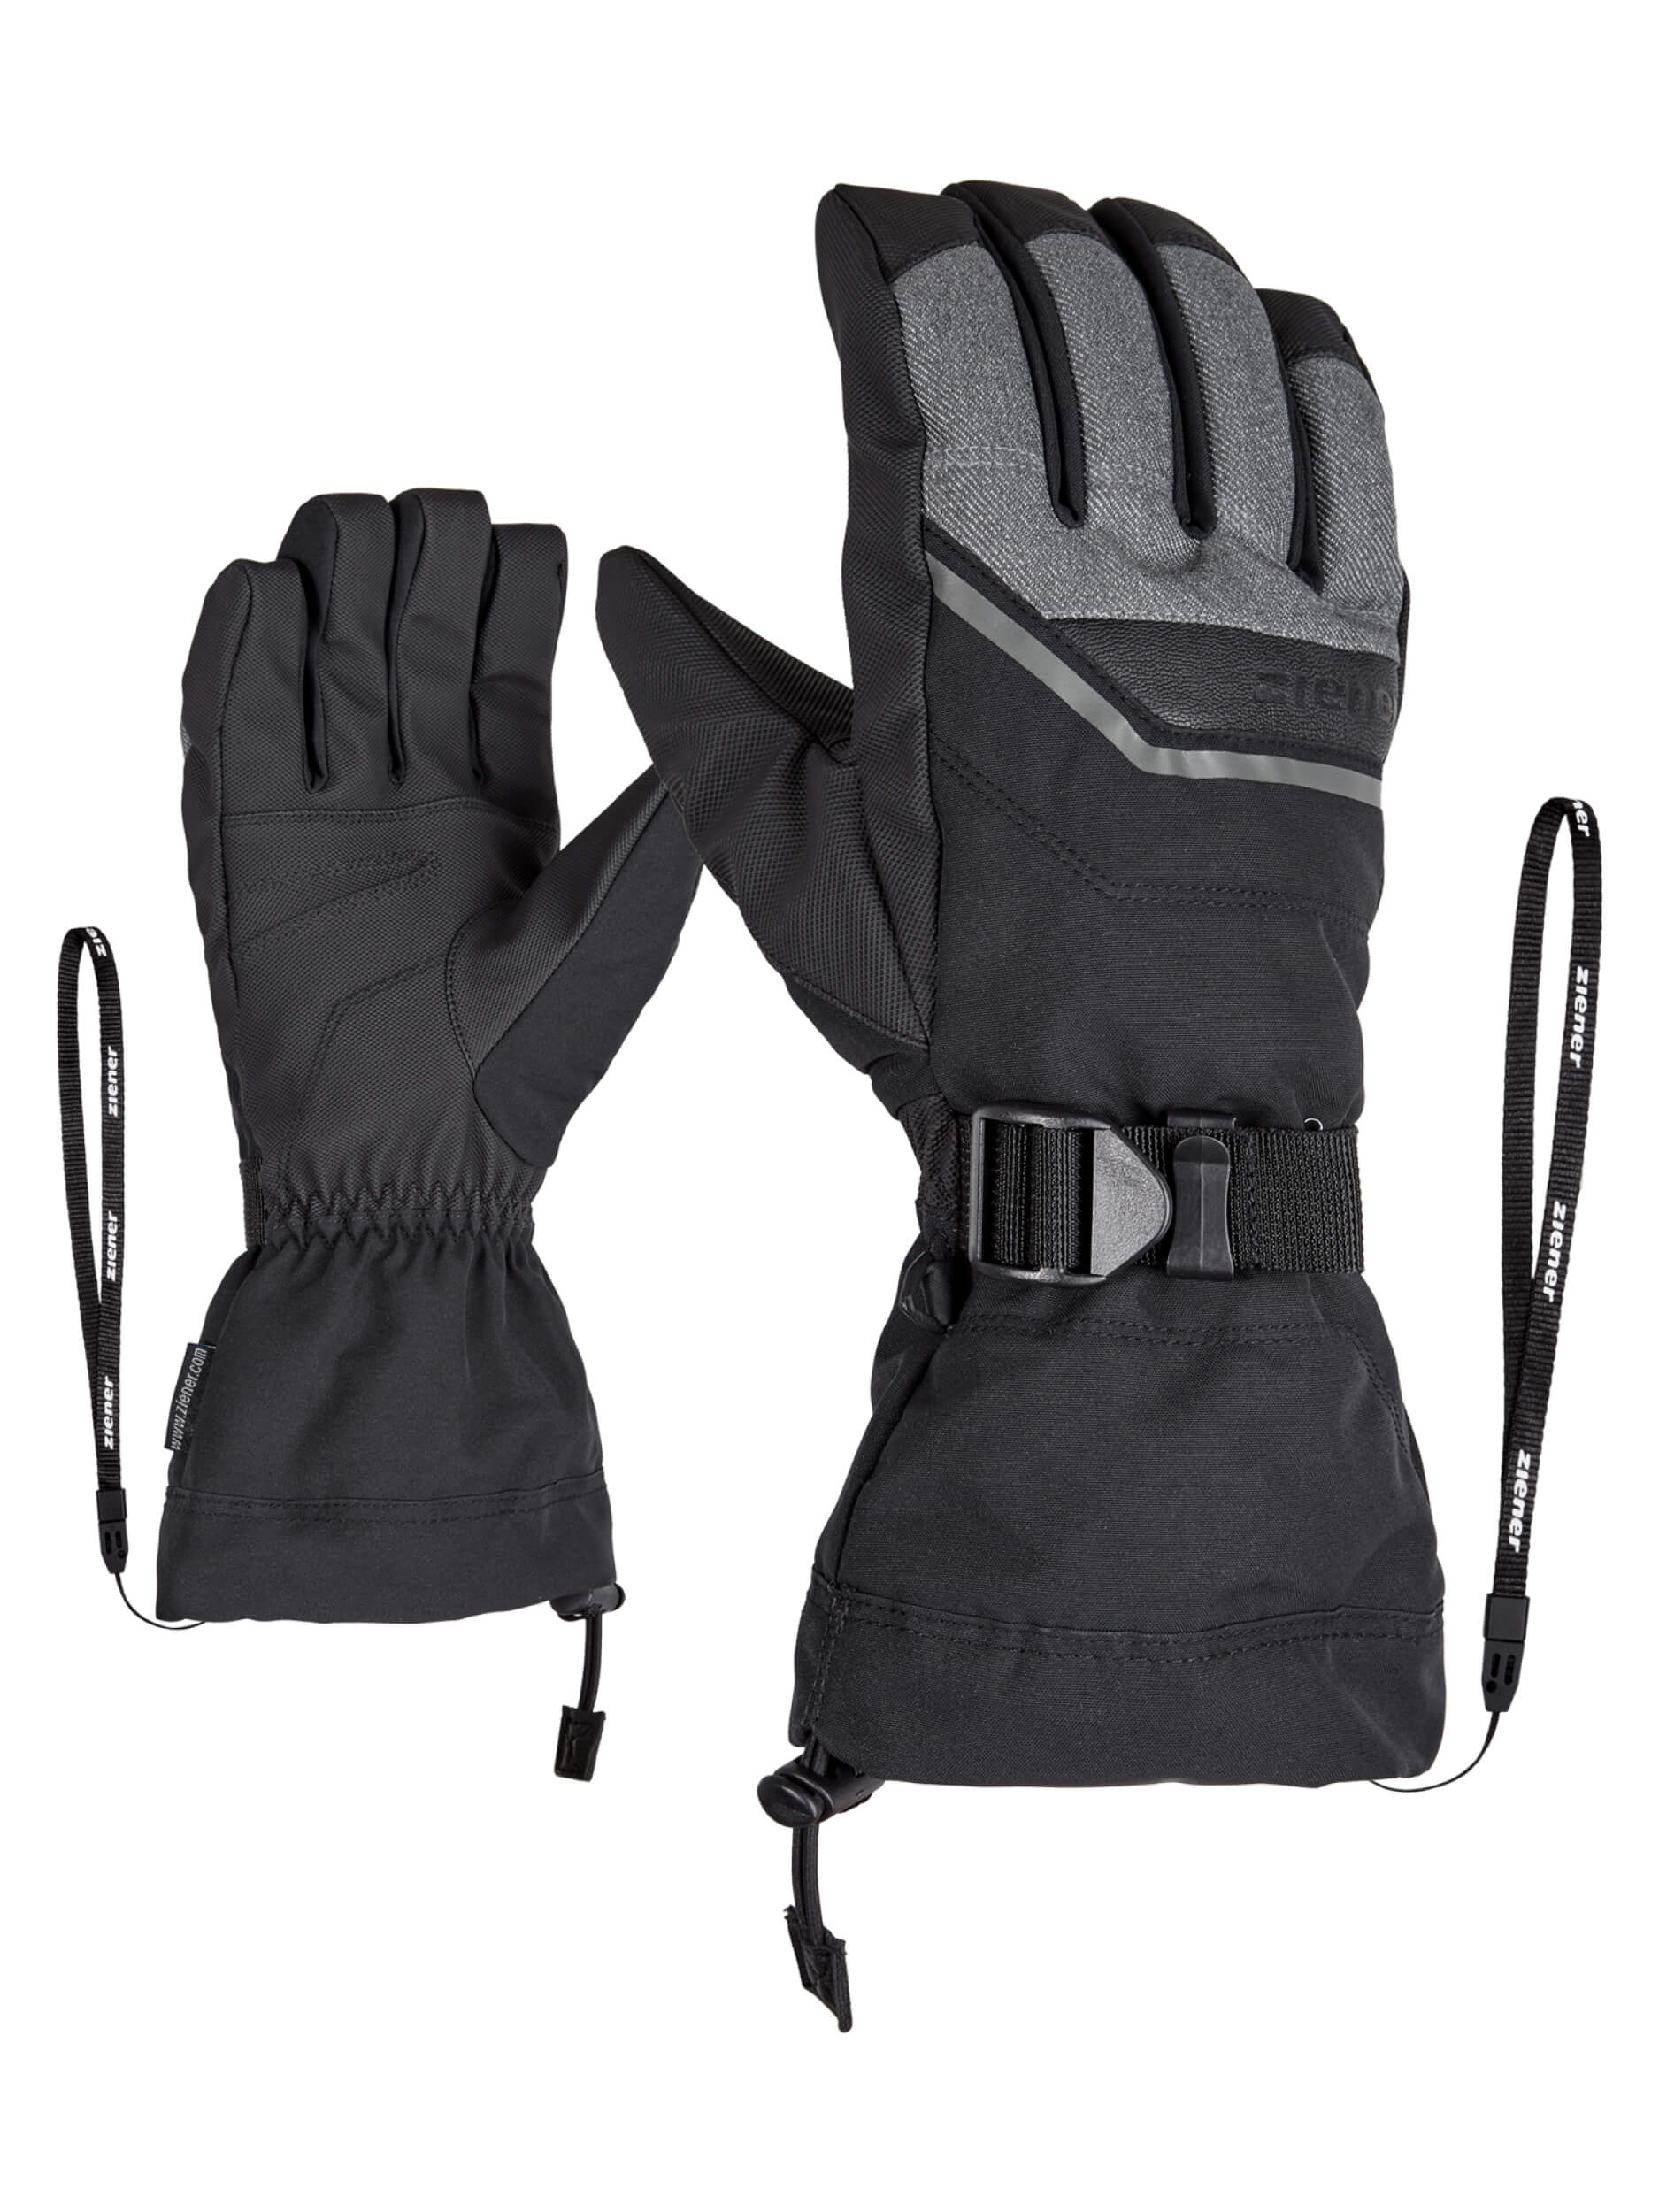 ZIENER Ski-Handschuhe Gillian AQUASHIELD grau schwarz 922 